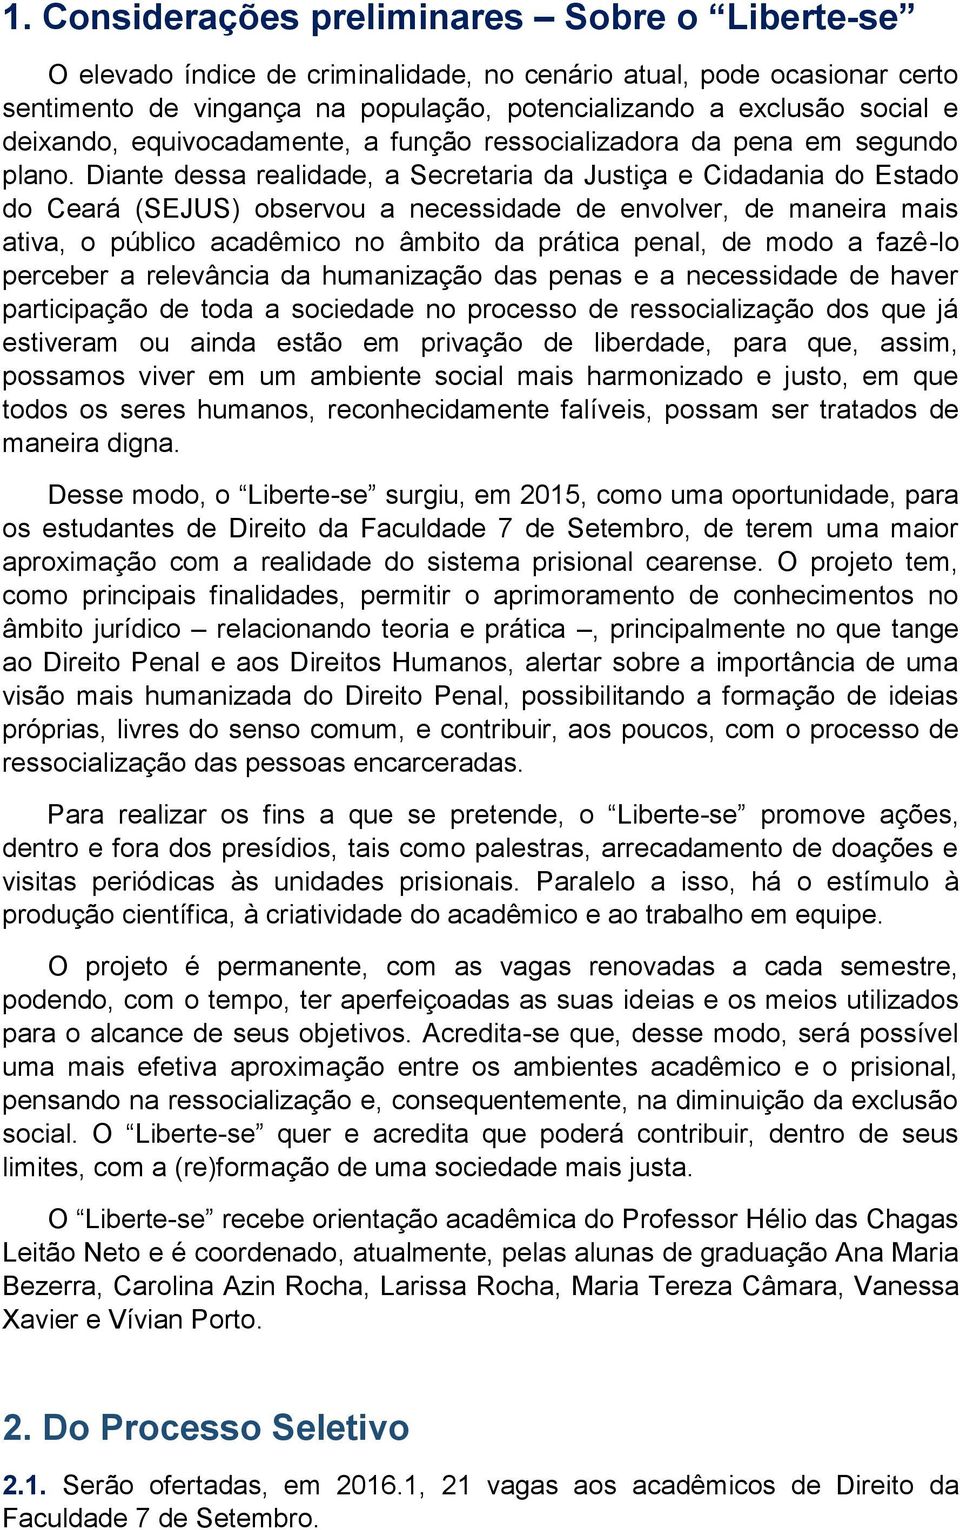 Diante dessa realidade, a Secretaria da Justiça e Cidadania do Estado do Ceará (SEJUS) observou a necessidade de envolver, de maneira mais ativa, o público acadêmico no âmbito da prática penal, de